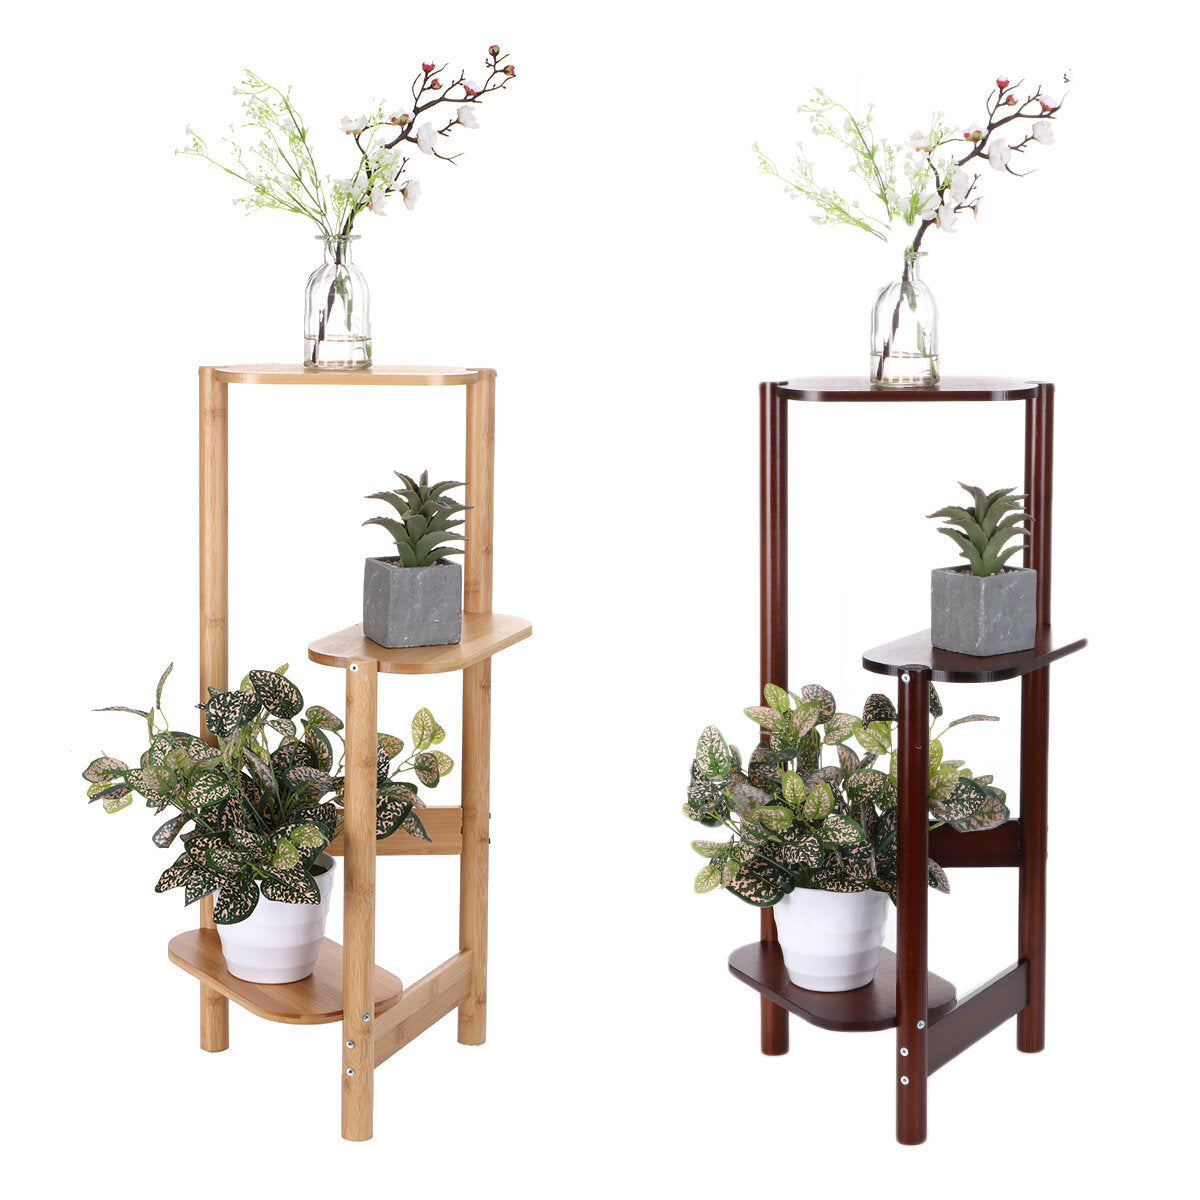 3-tier hoek houten plant stand tuin bloempot houder display rack planken